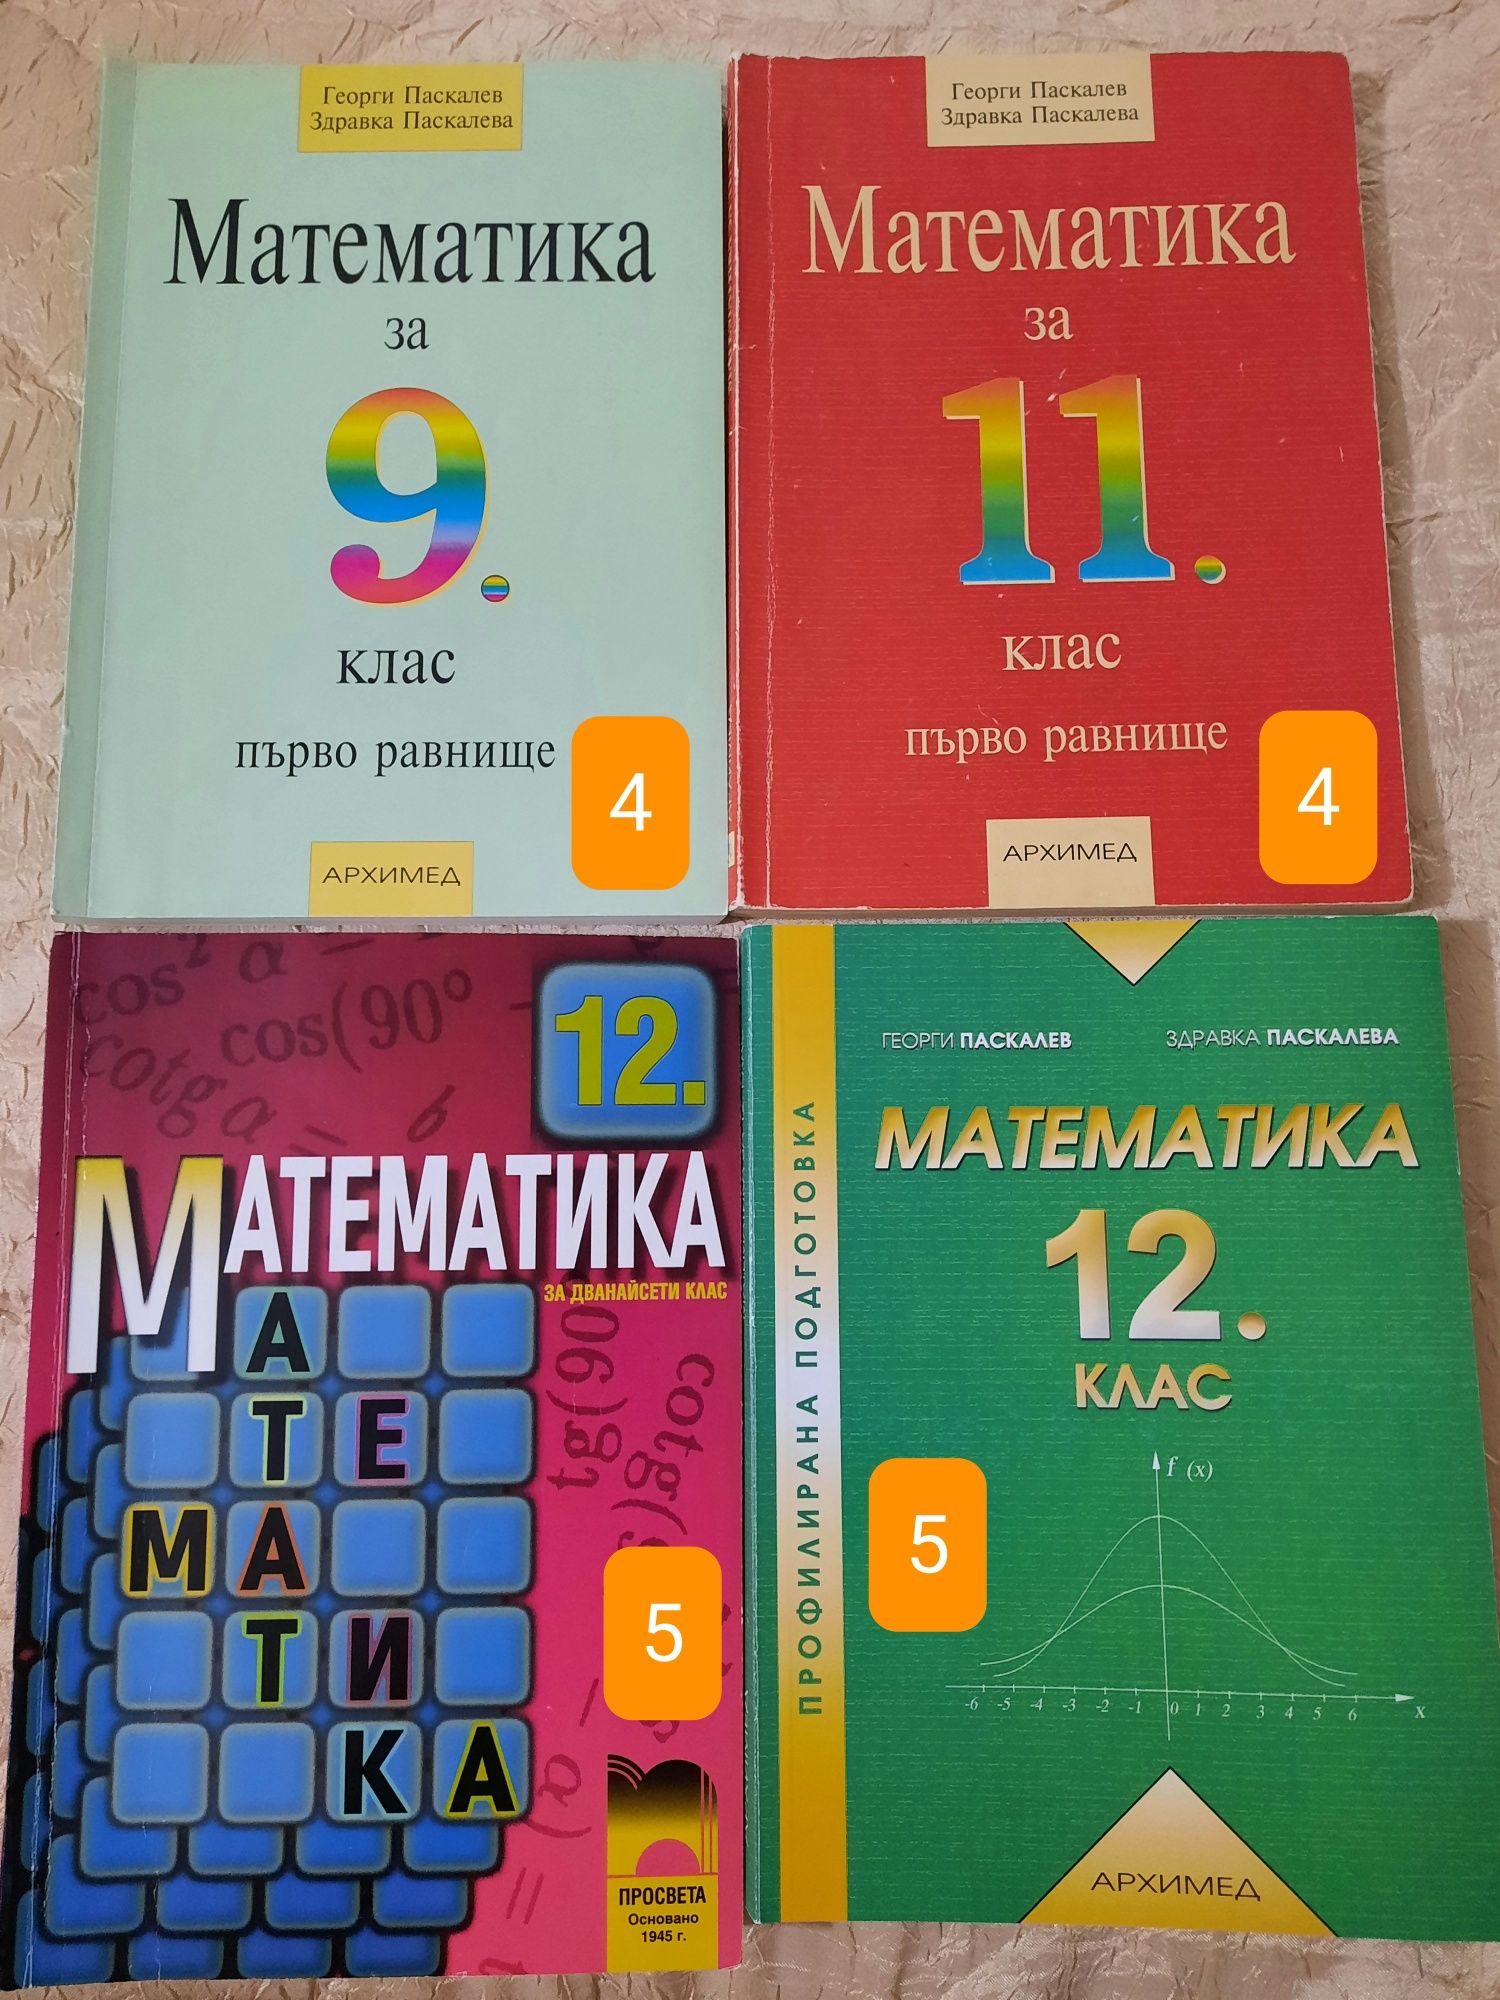 Учебници по математика 9,11,12 клас